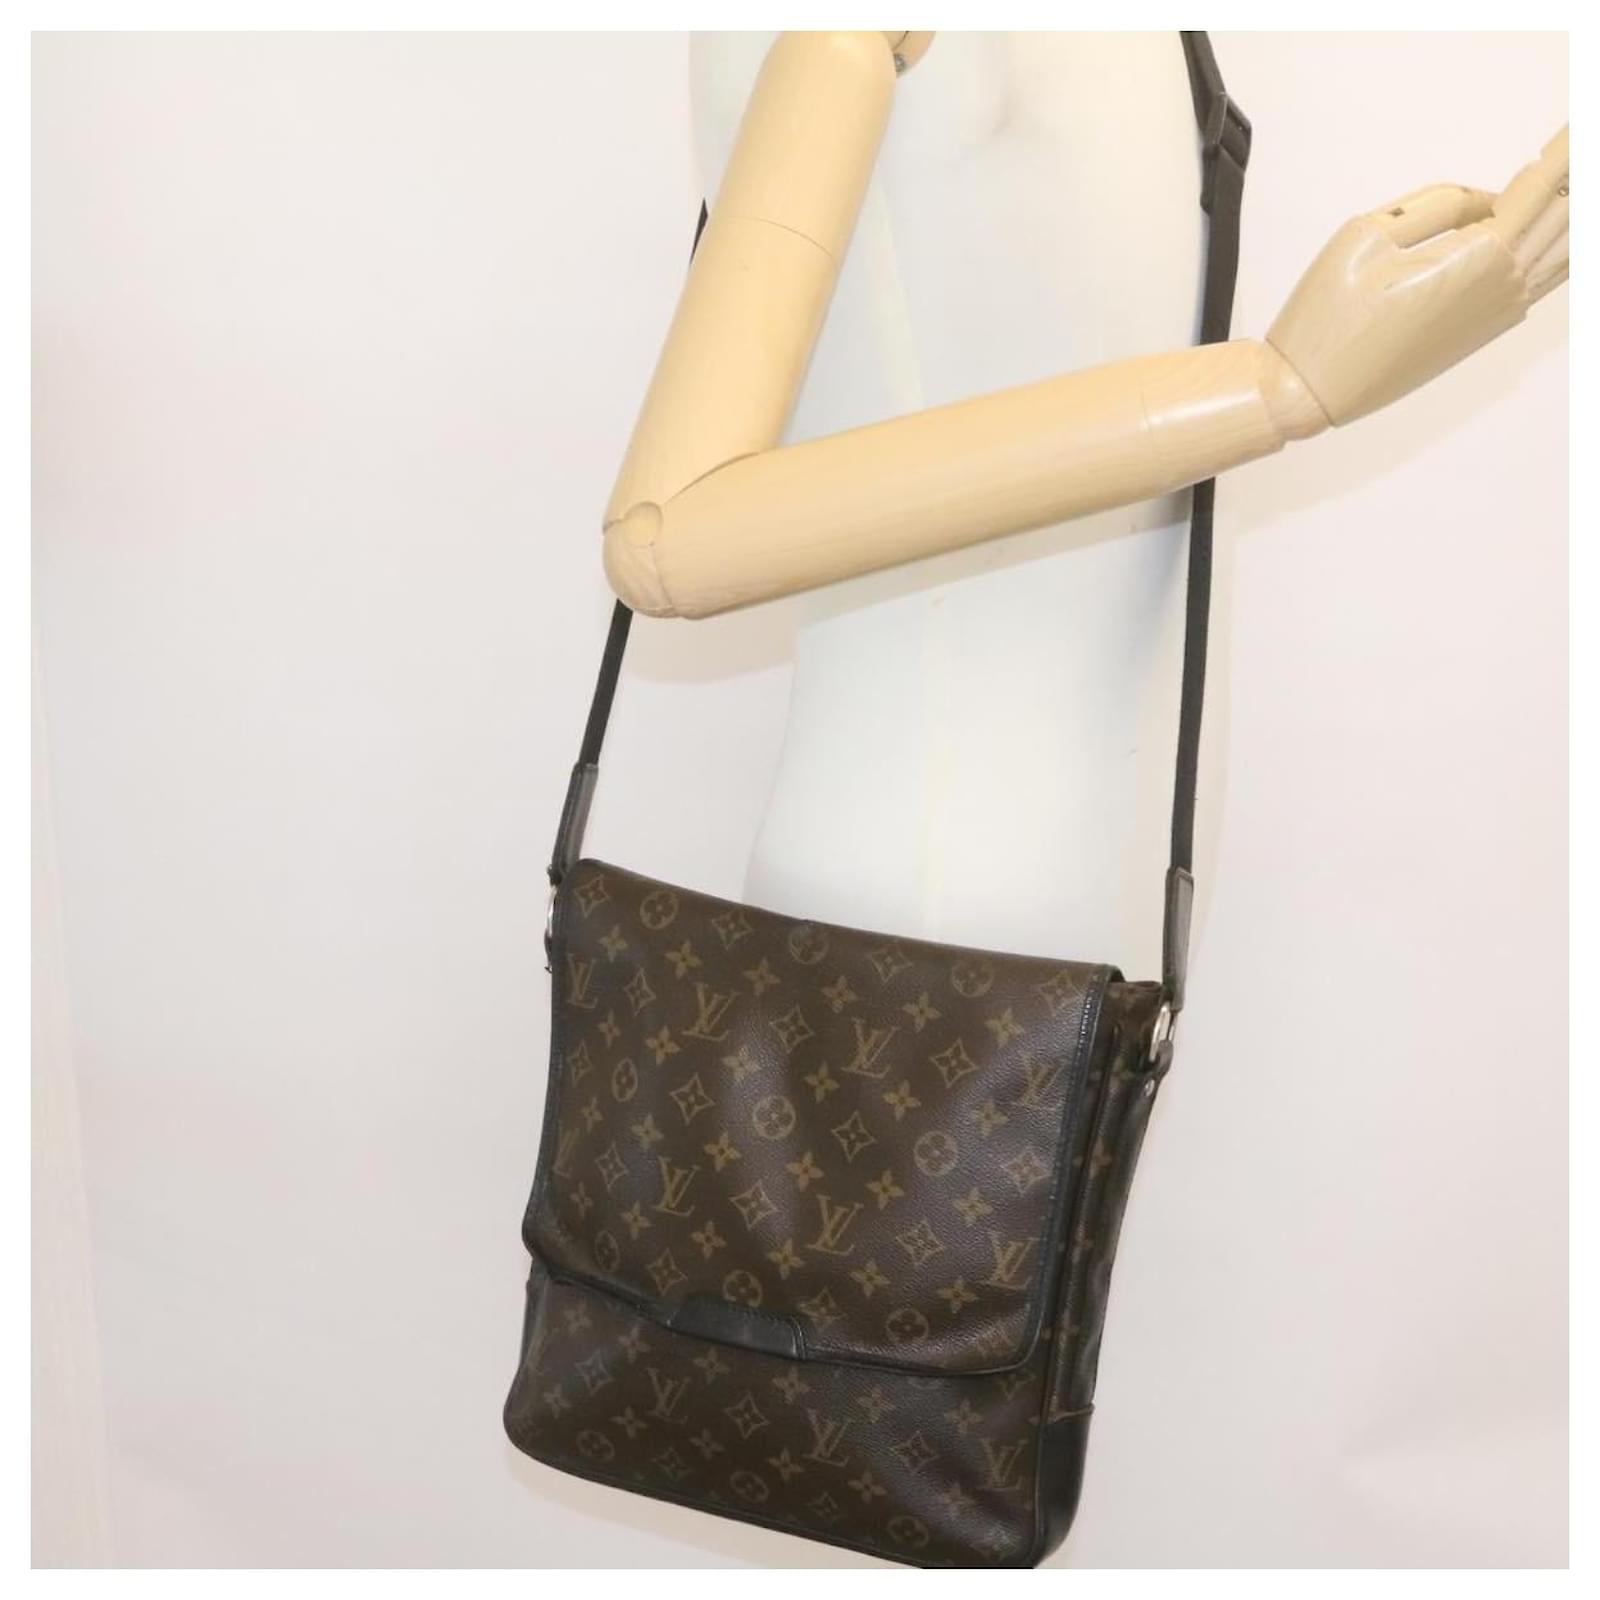 Pin by MasHa Lǝopardiina on Fᴀsʜɪᴏɴ ᴍᴏᴅᴇ ..!  Michael kors bag outfit, Vuitton  outfit, Louis vuitton vintage bags